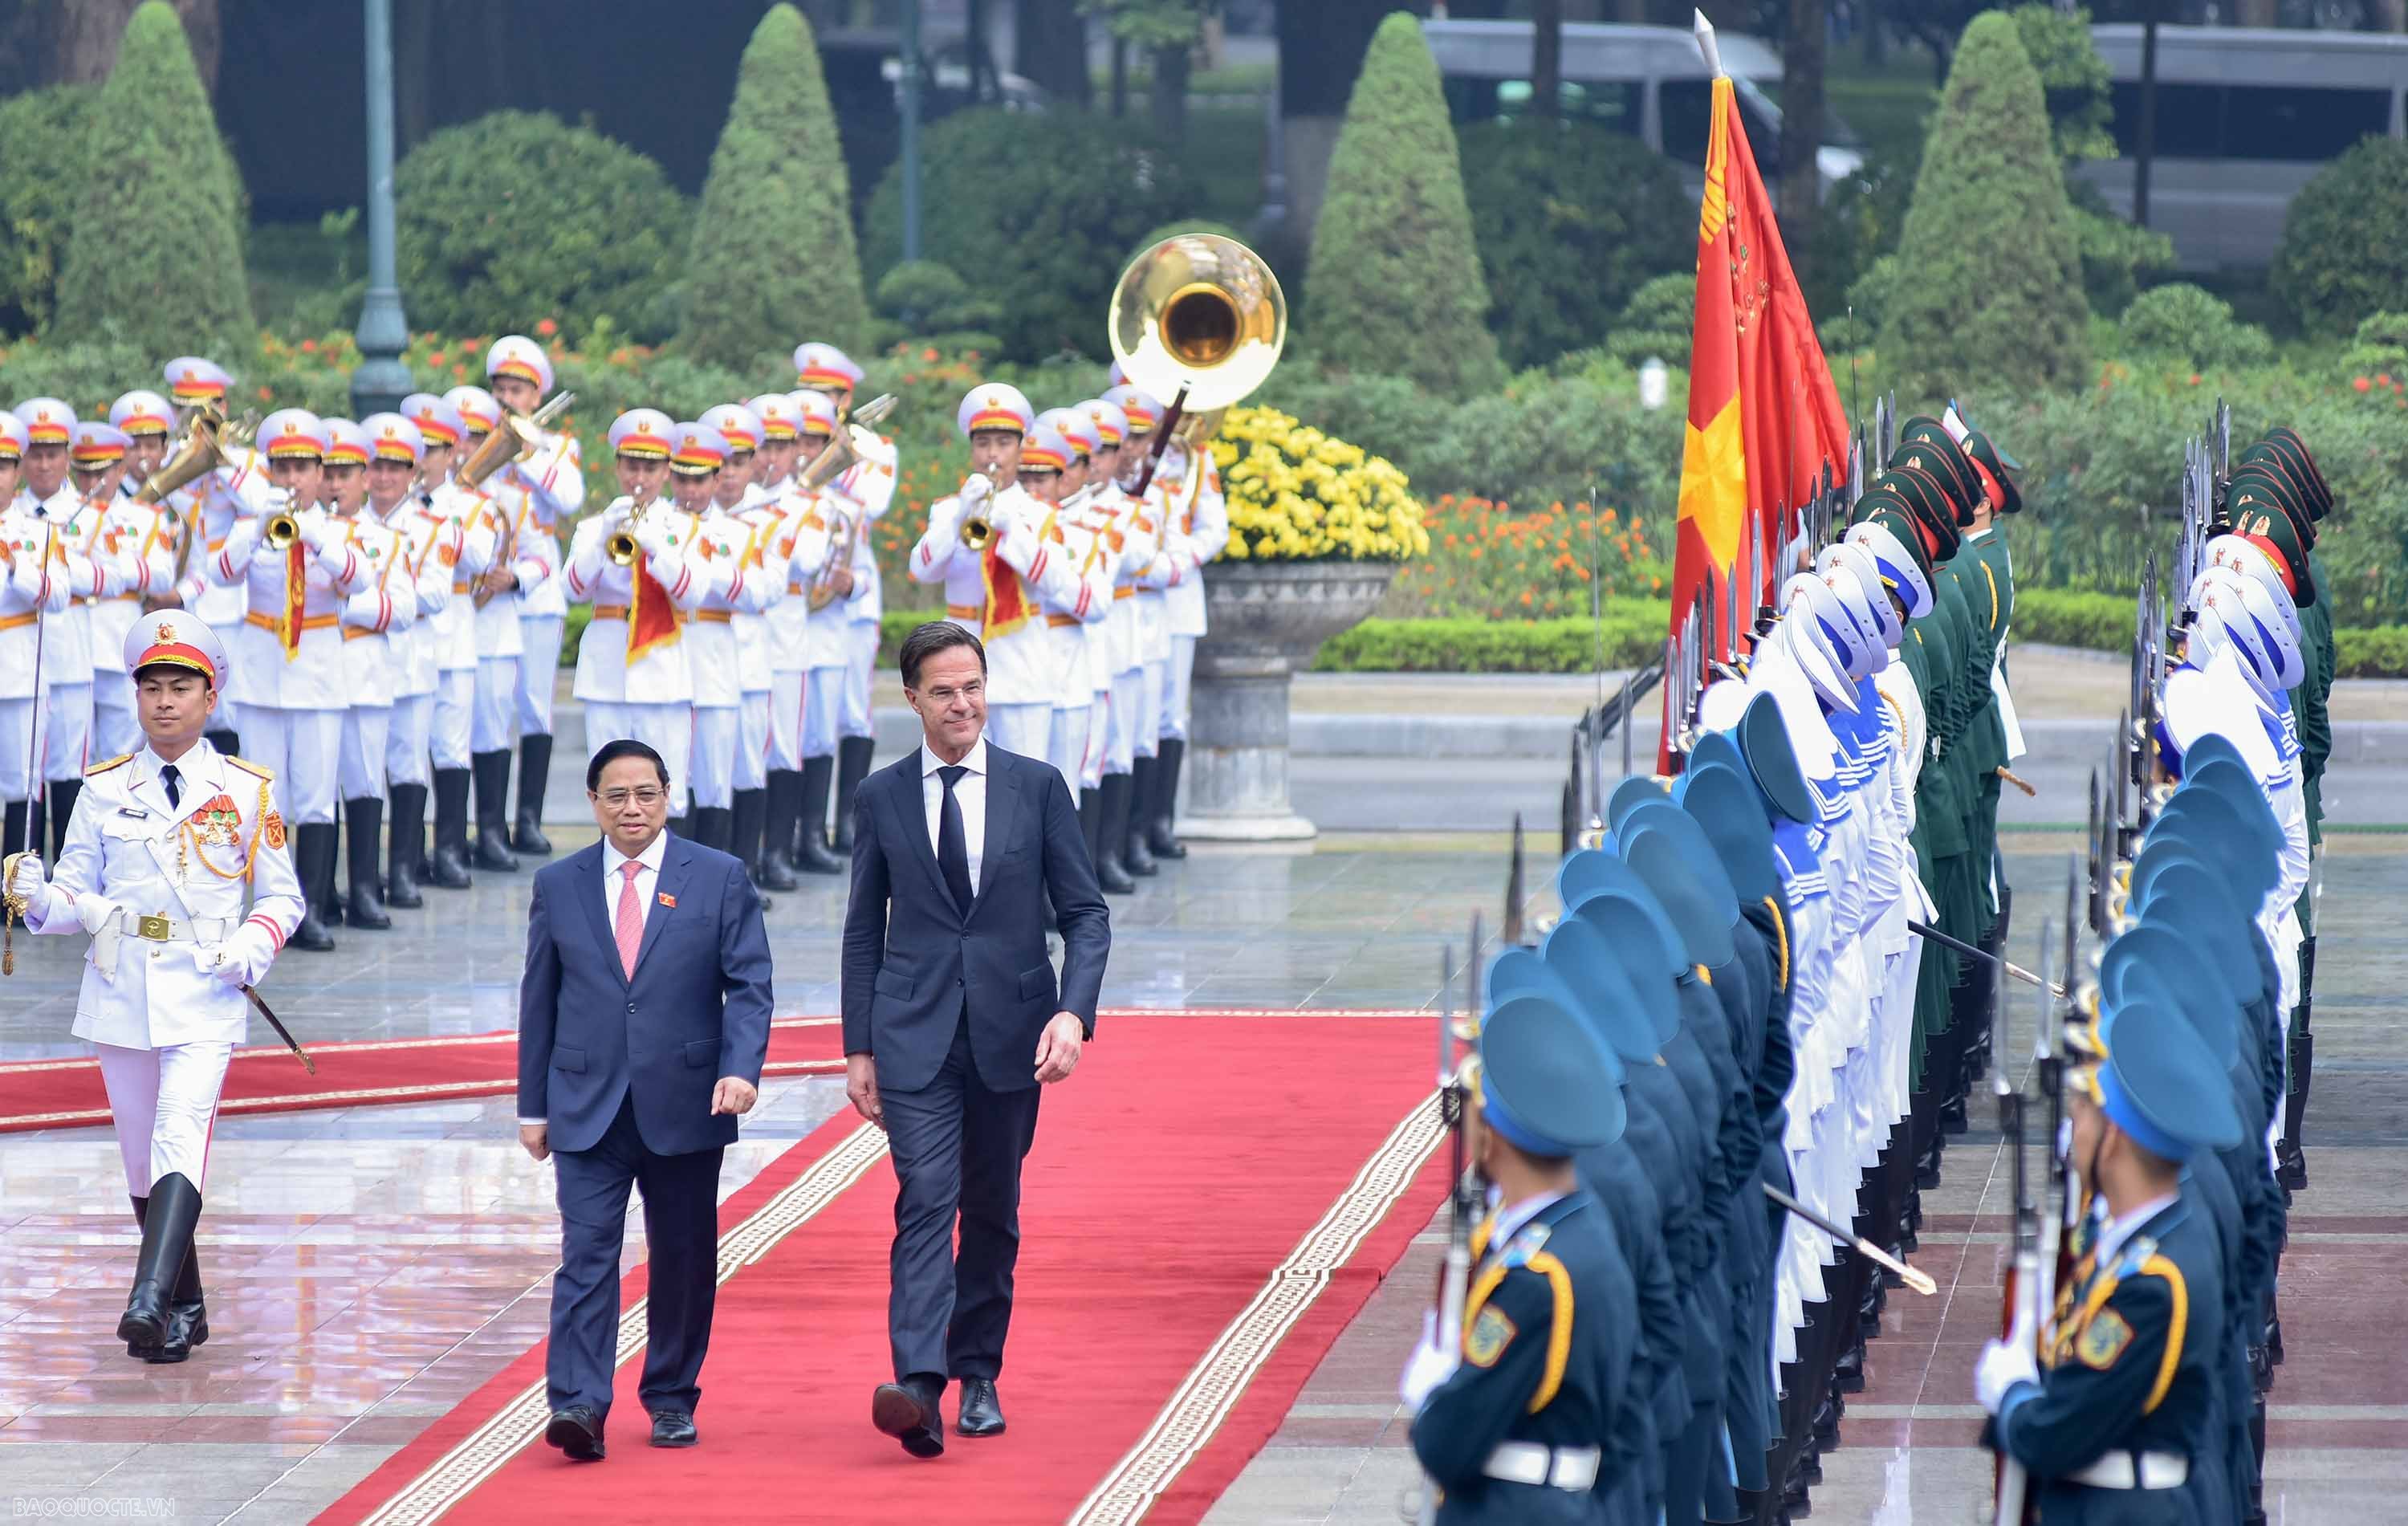 Thủ tướng Mark Rutte đã hai lần thăm chính thức Việt Nam (tháng 6/2014 và tháng 4/2019), nhiều lần đón lãnh đạo cấp cao Việt Nam thăm Hà Lan. Ông là người có thiện cảm với Việt Nam.